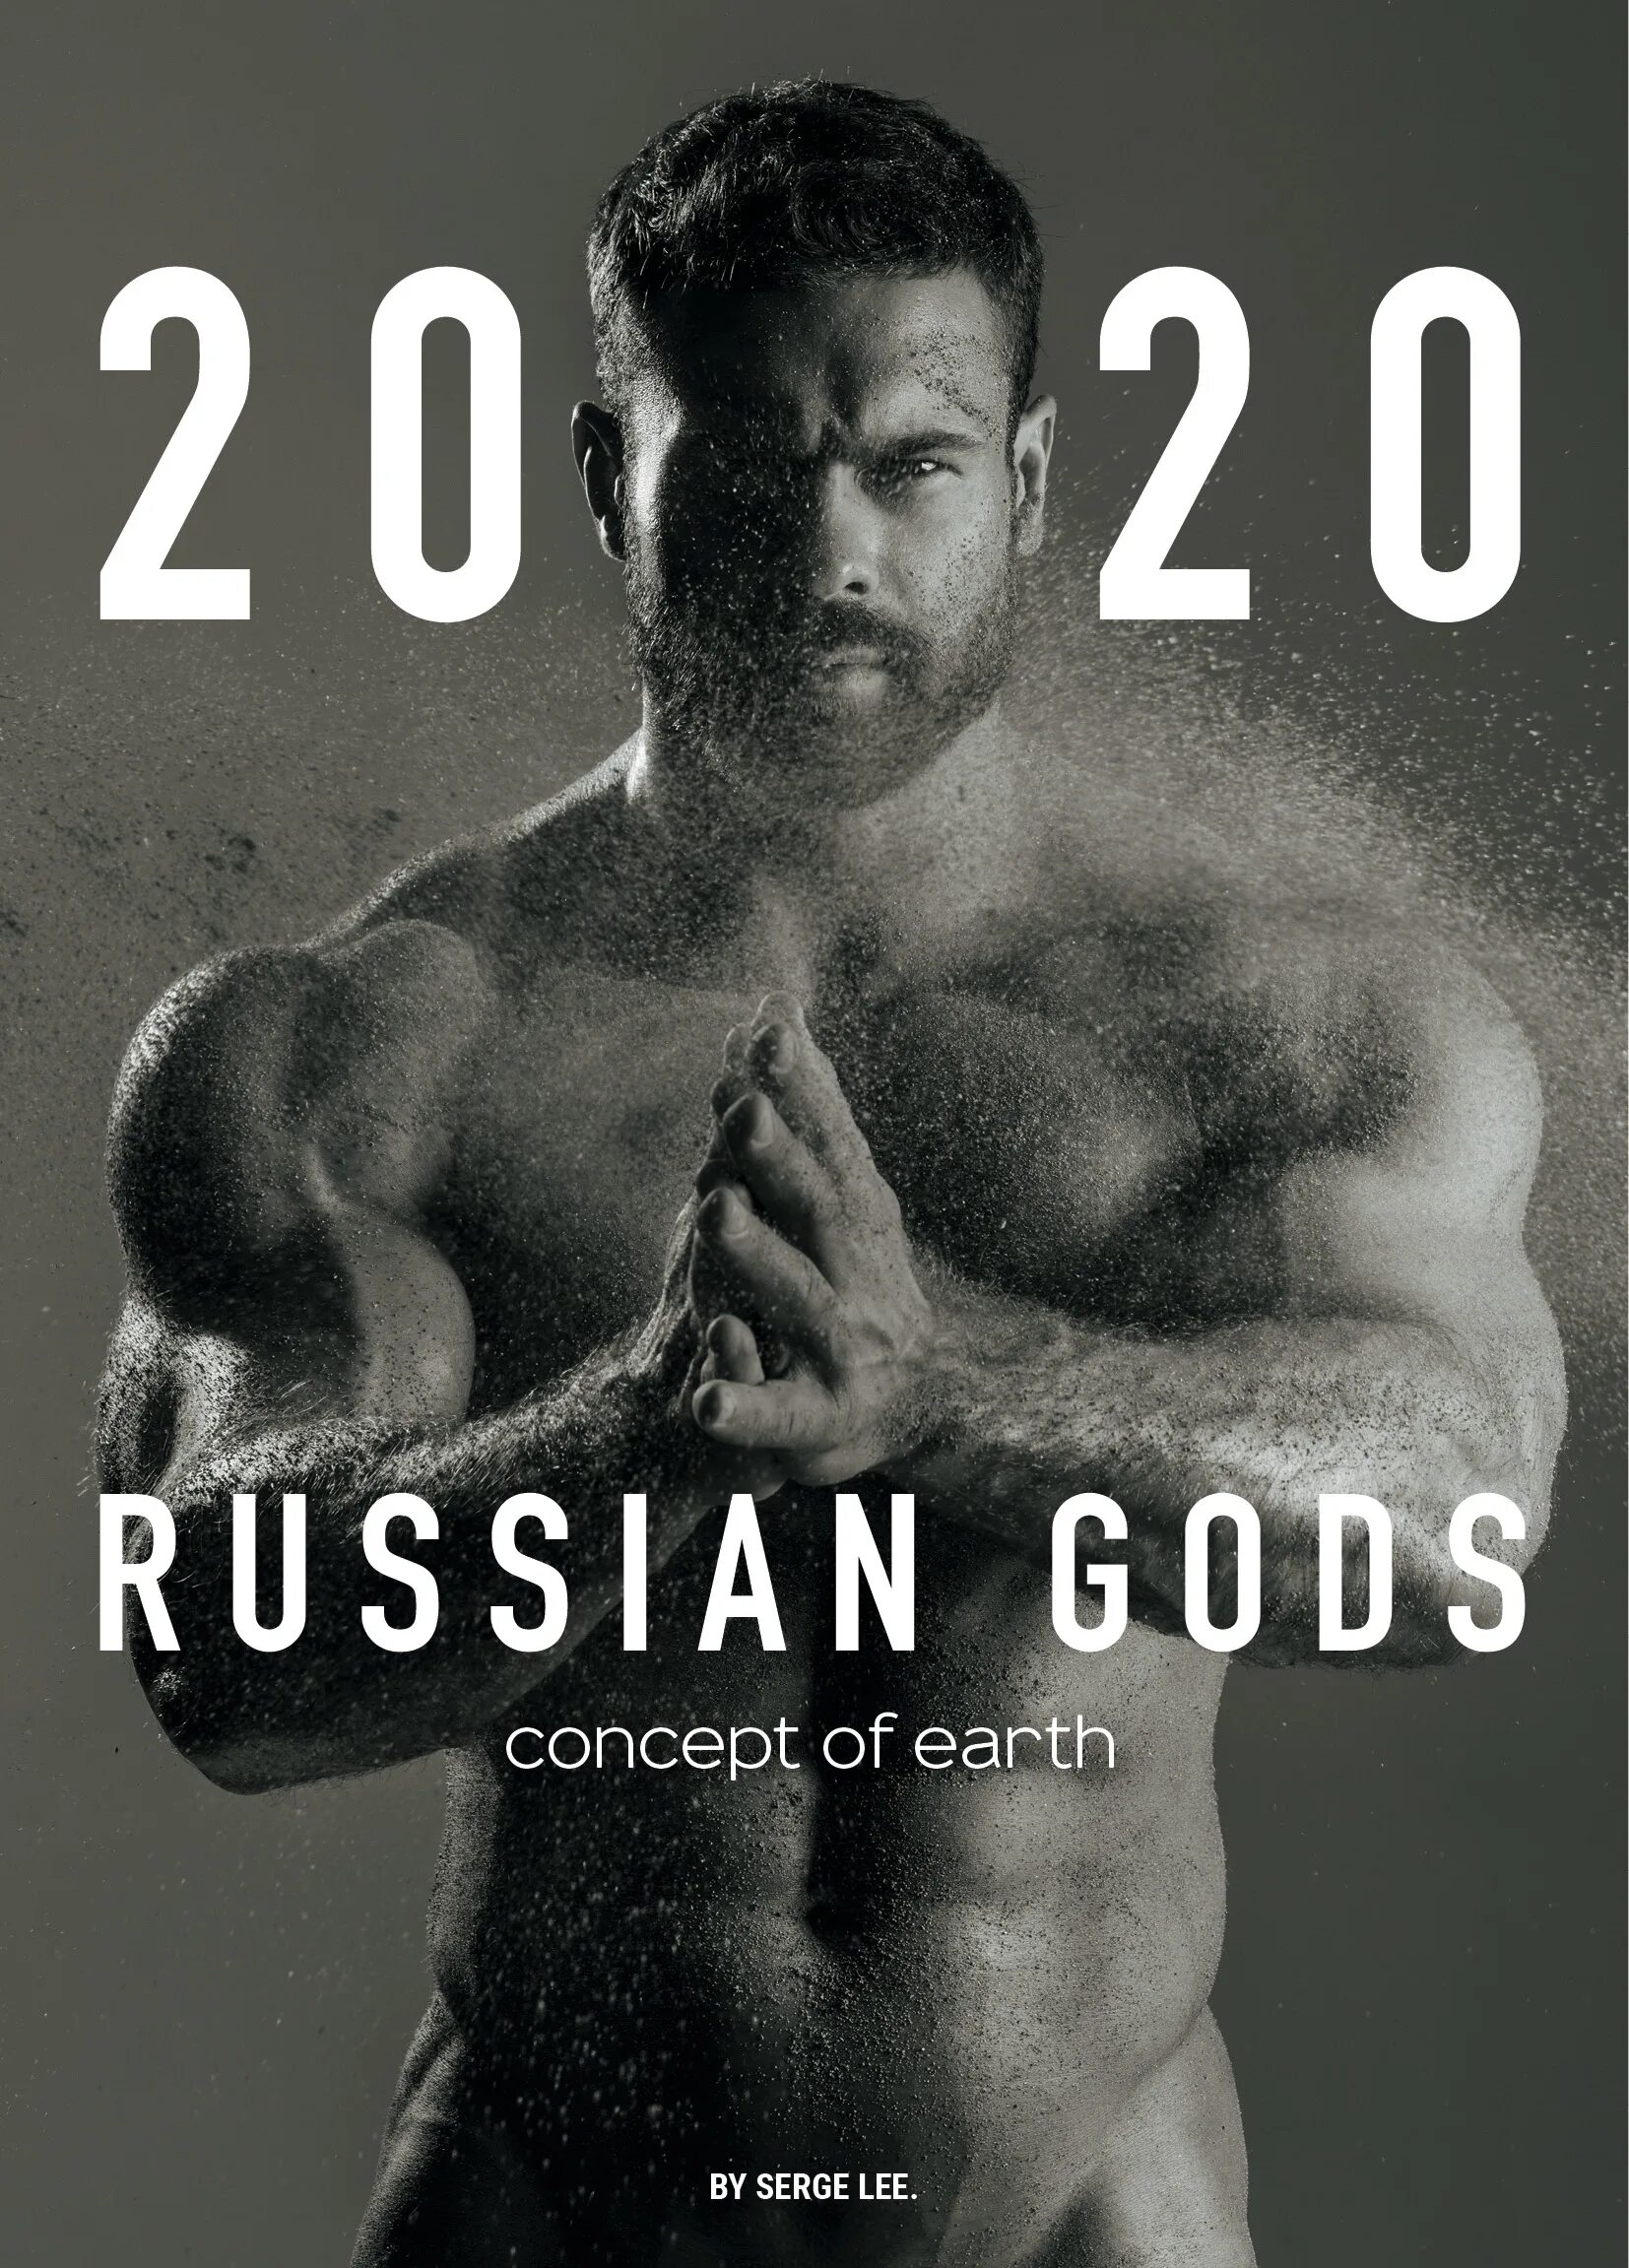 Russian Gods Calendar. Konstantin Kamynin 2022 Official Calendar. 19 апреля 2020 год